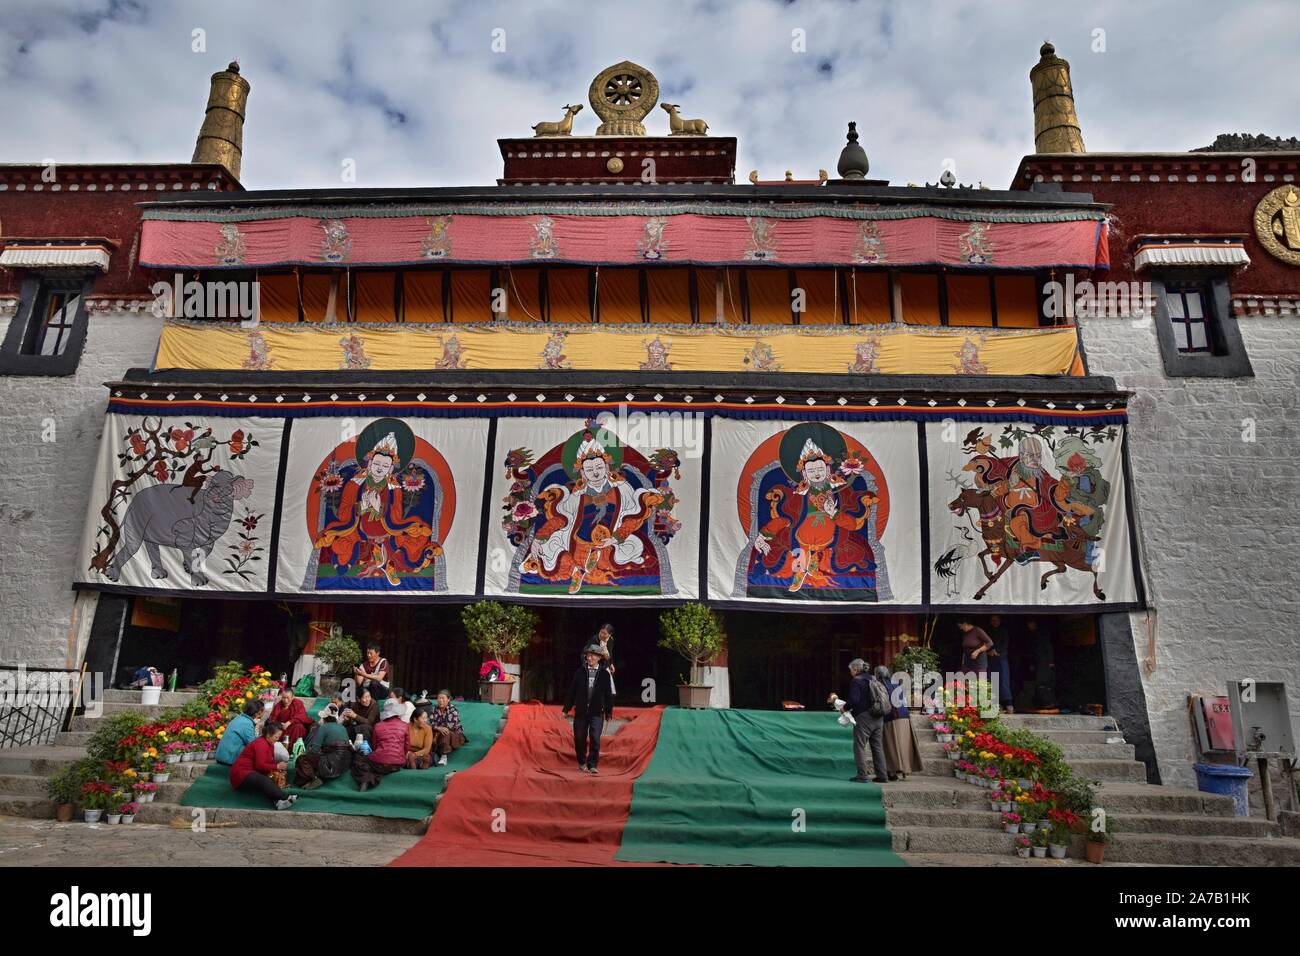 Monastero di Sera, LHASA, IN TIBET - circa ottobre 2019: Uno dei grandi tre università Gelug monasteri del Tibet, è stato fondato nel 1419. Foto Stock